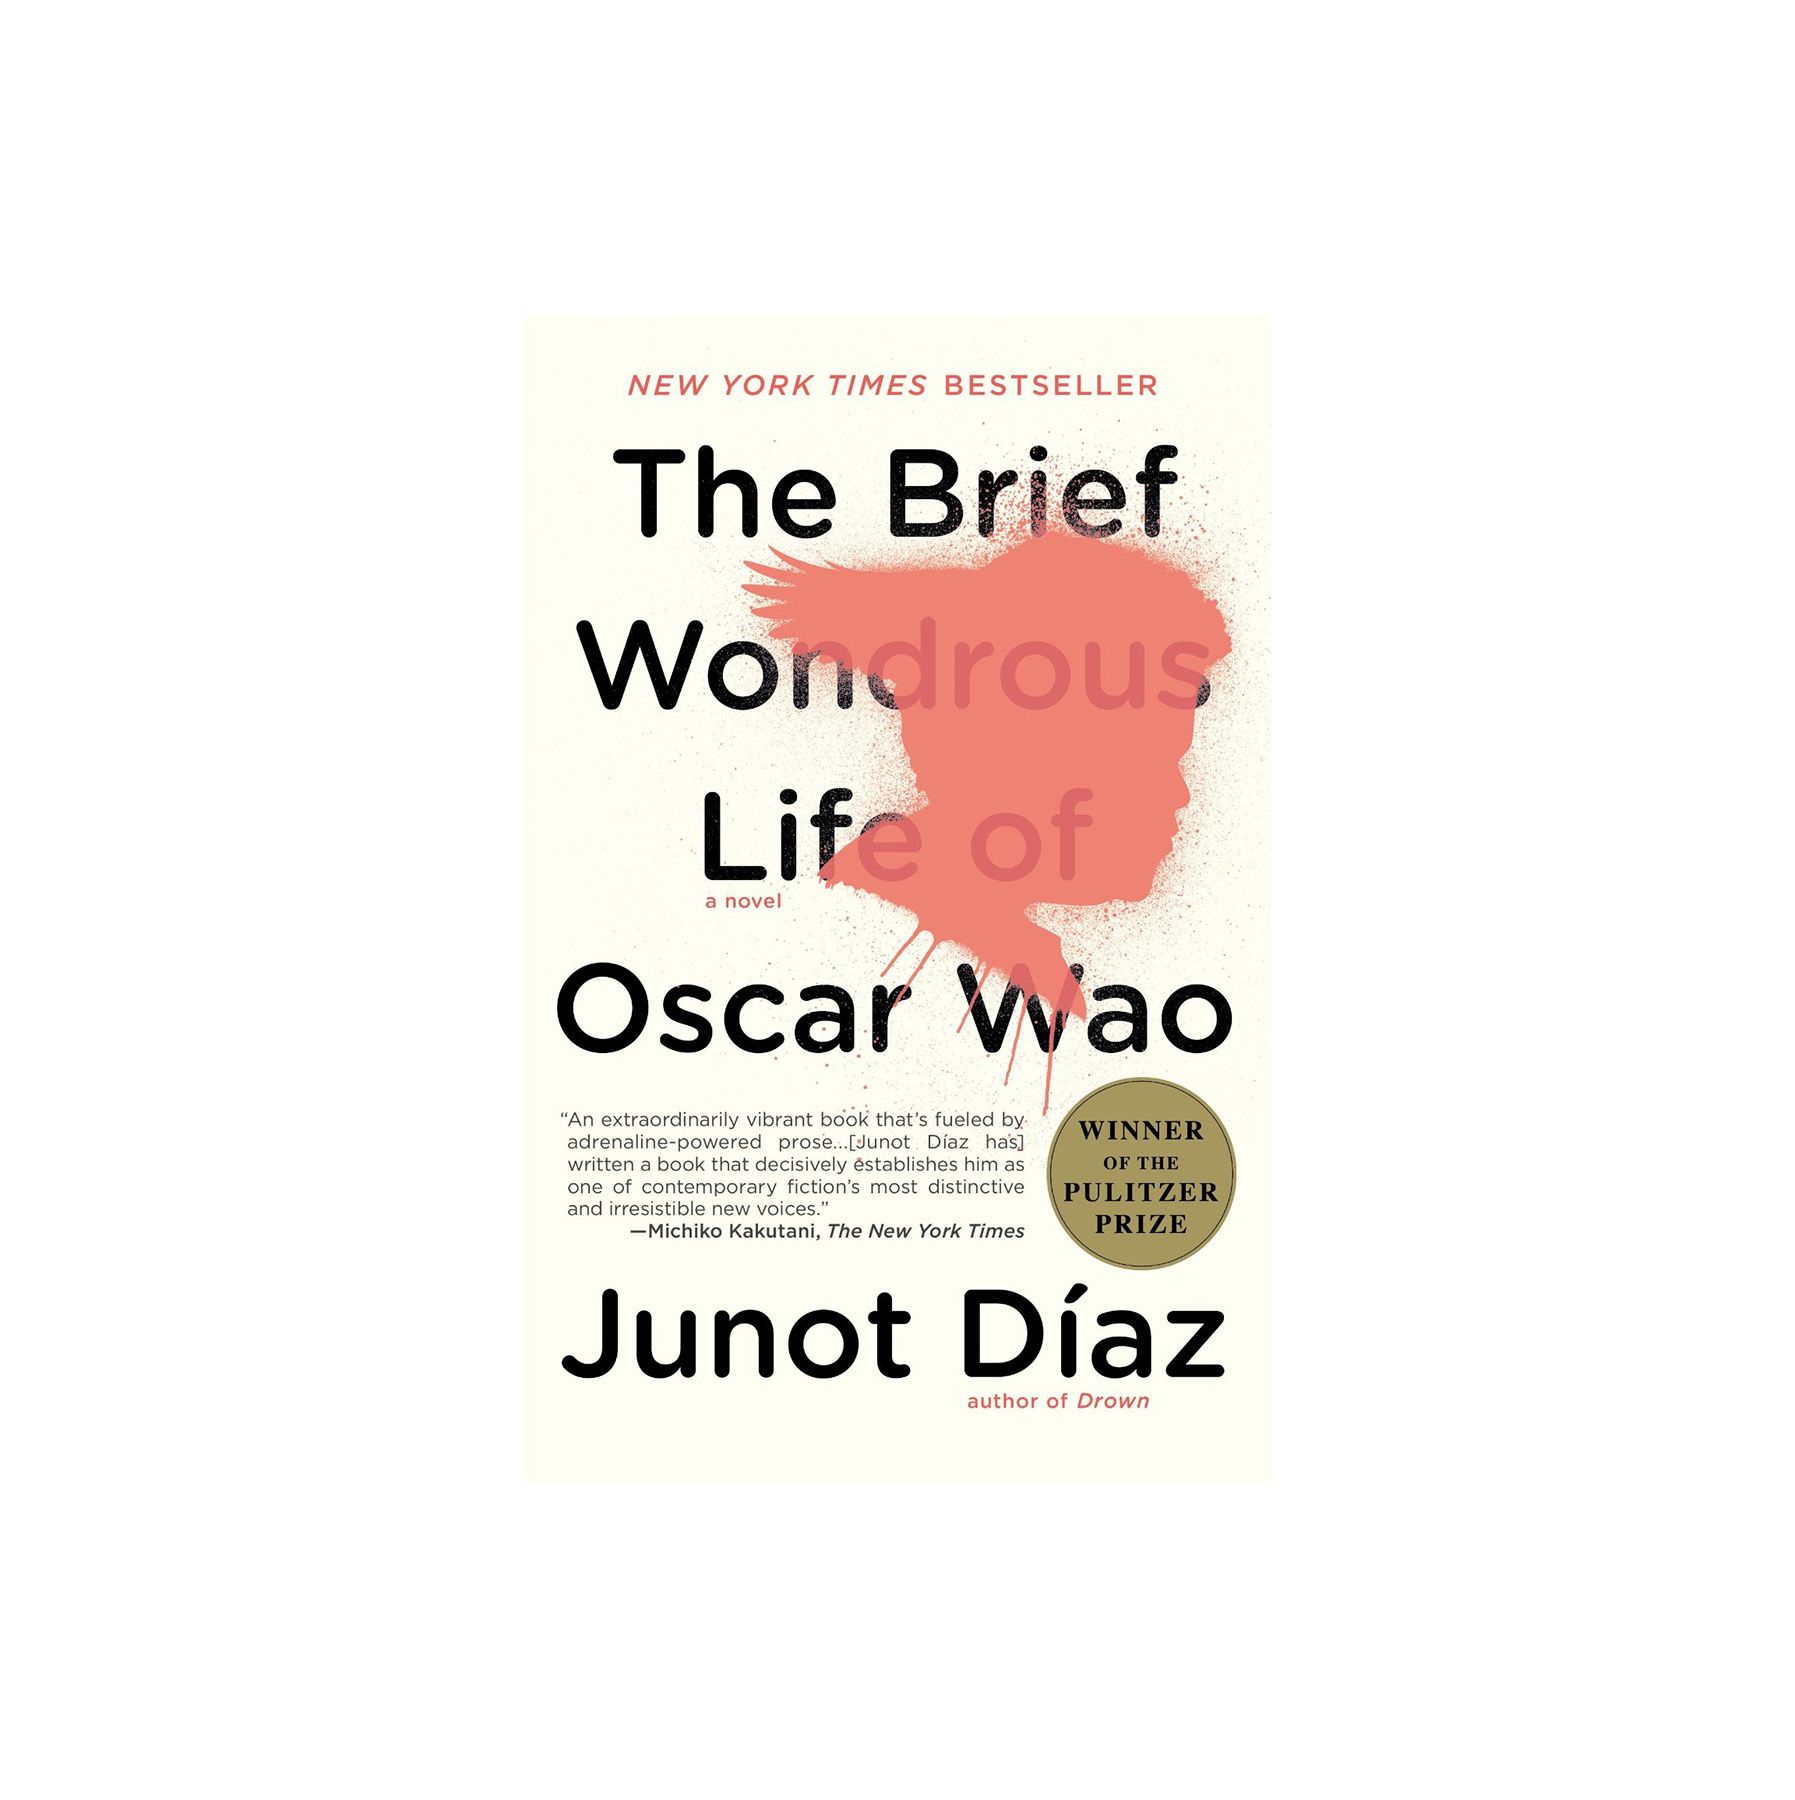 A Breve Vida Maravilhosa de Oscar Wao, de Junot Diaz